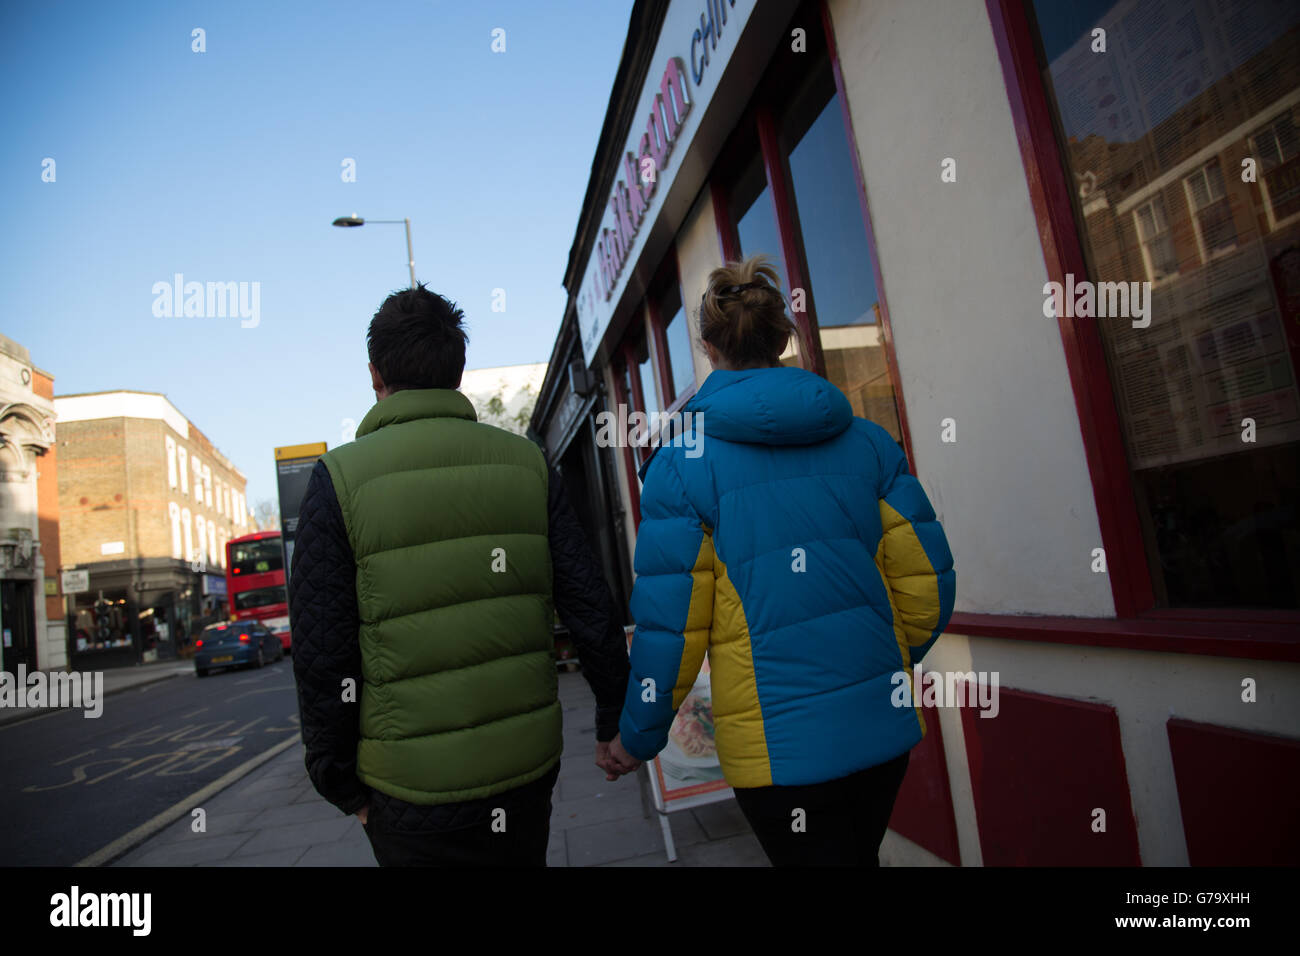 Dans l'homme veste puffer vert, la femme en bleu et jaune veste puffer de derrière, Stoke Newington, Londres. Banque D'Images